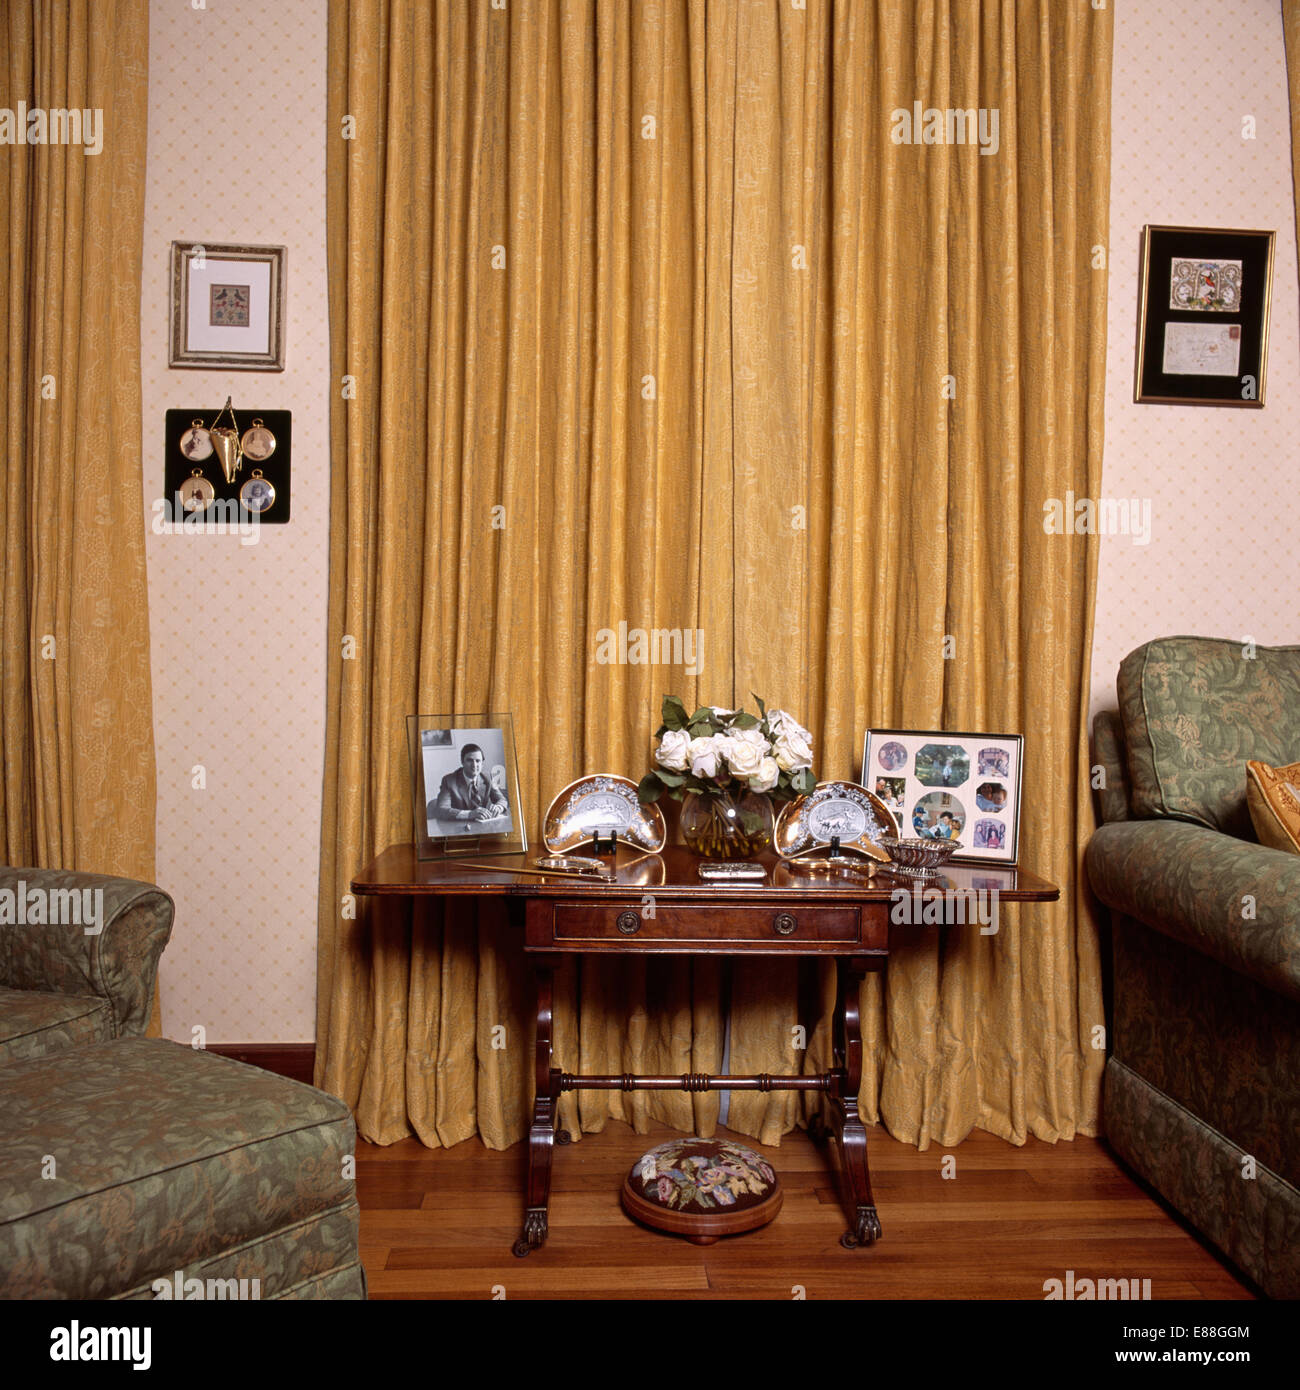 Fotografie incorniciate sul piccolo tavolo di fronte tende di color ocra in salotto Foto Stock